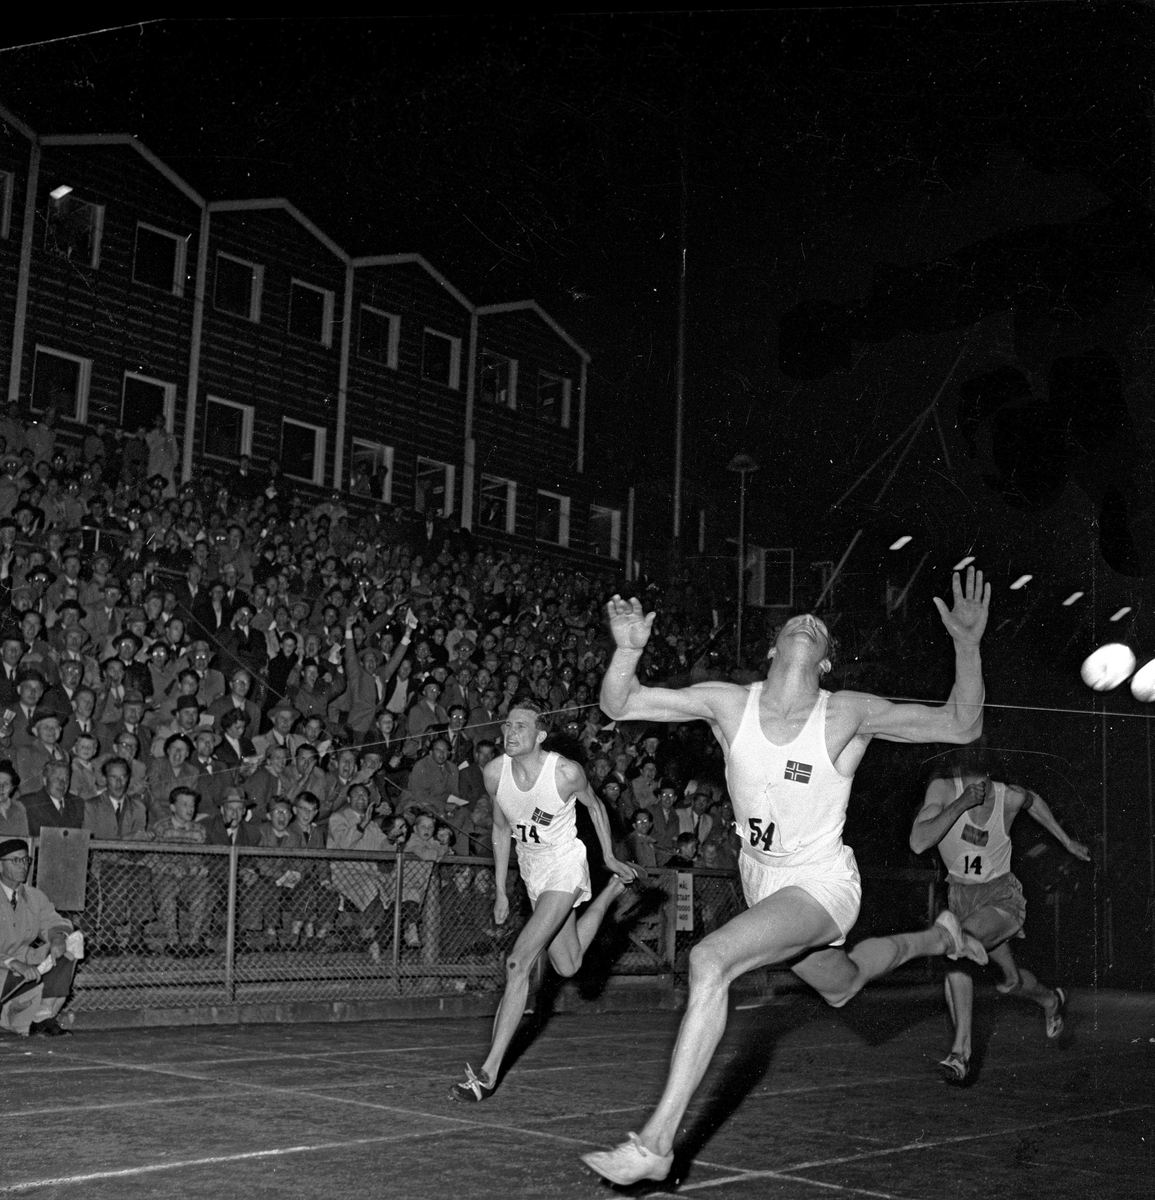 Serie. Sport. Friidrett. Landskamp Norge-Sverige..
Fotografert 1954. 
